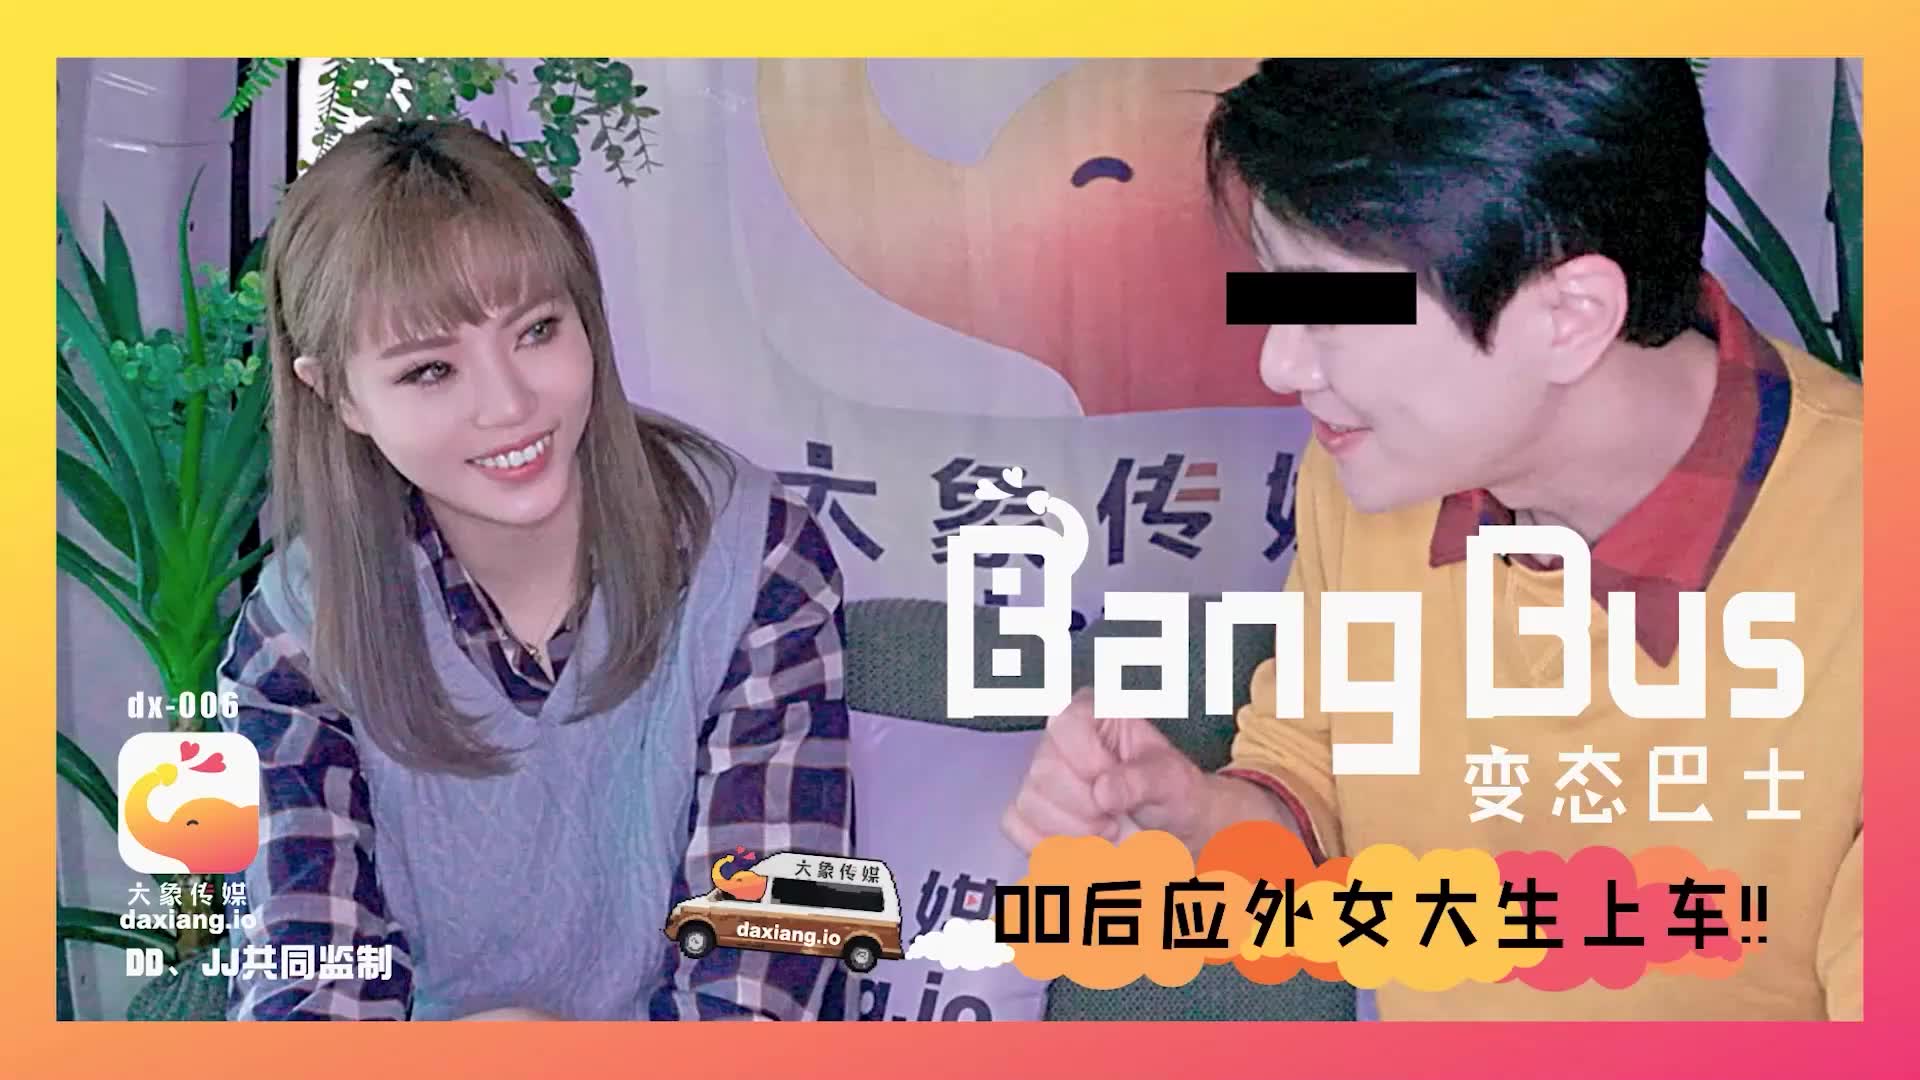 Taishang Media's Talking Girl - Bad Bad